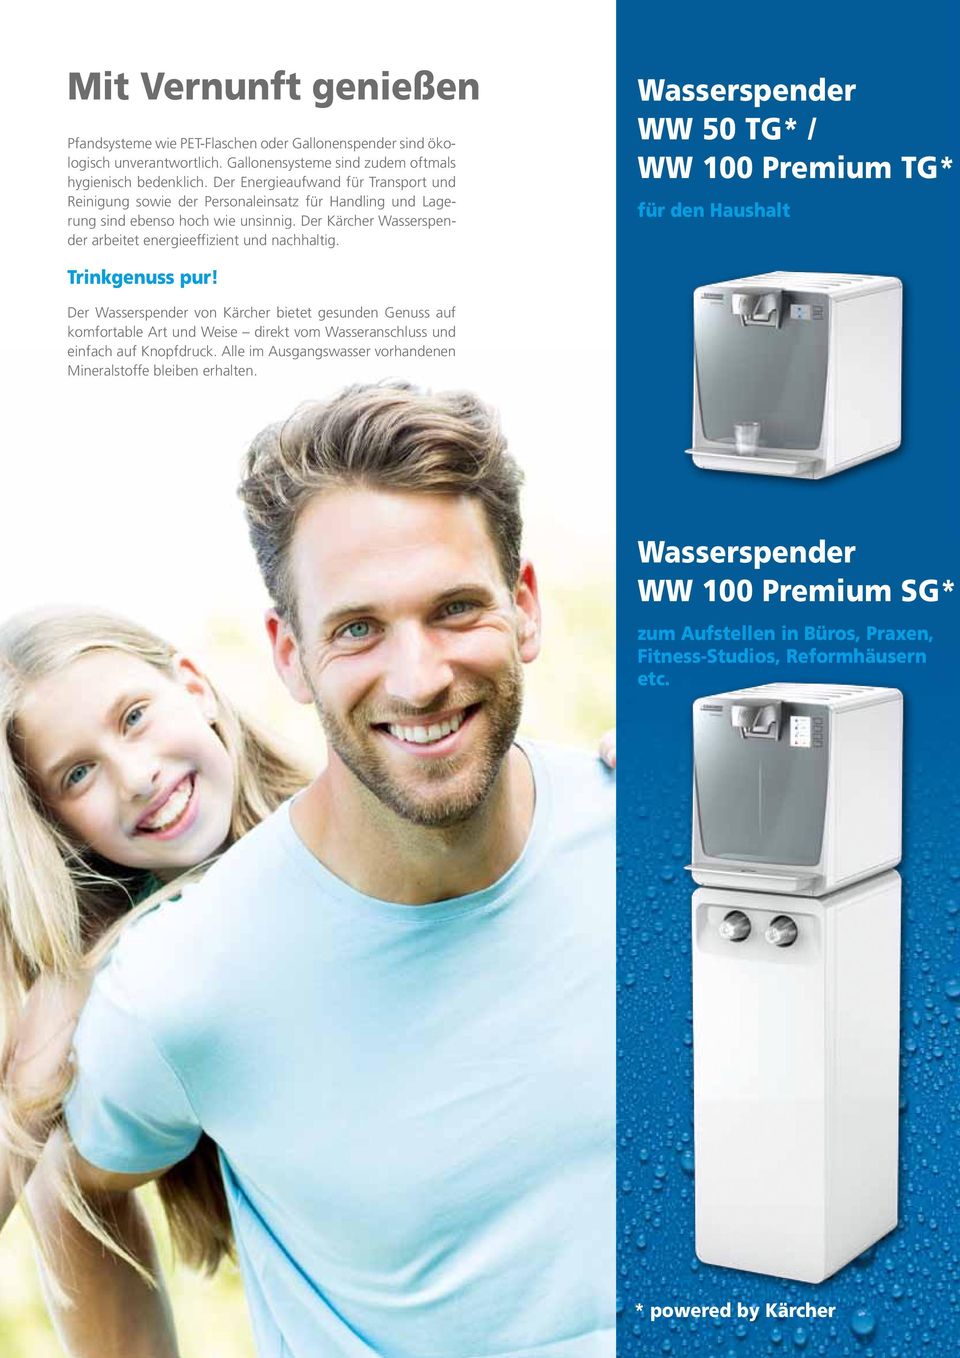 Der Kärcher Wasserspender arbeitet energieeffizient und nachhaltig. Wasserspender WW 50 TG* / WW 100 Premium TG* für den Haushalt Trinkgenuss pur!